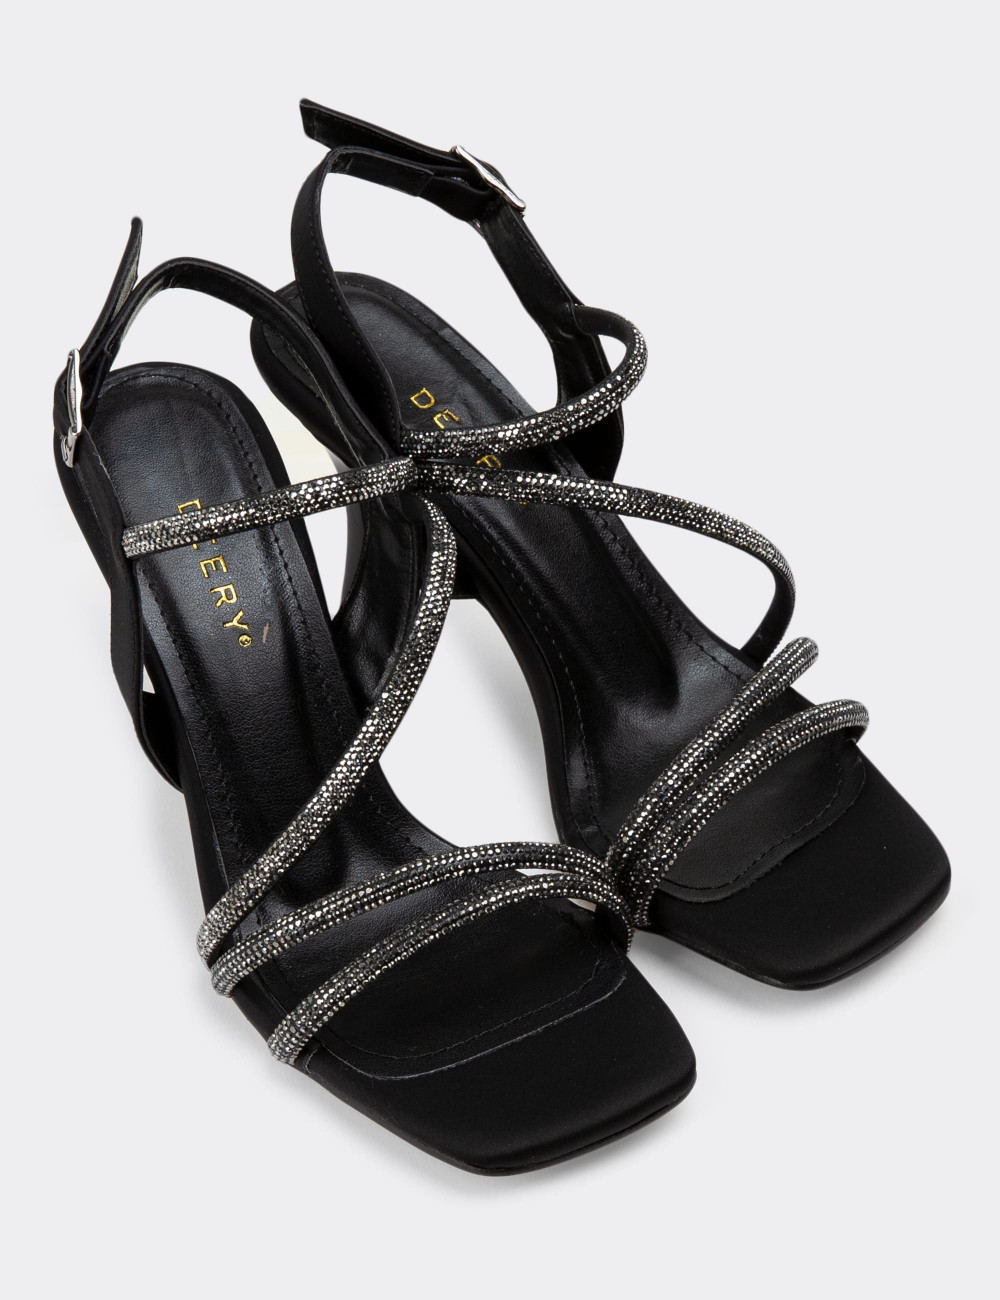 Siyah Topuklu Kadın Taşlı Abiye Ayakkabı - K0544ZSYHM01